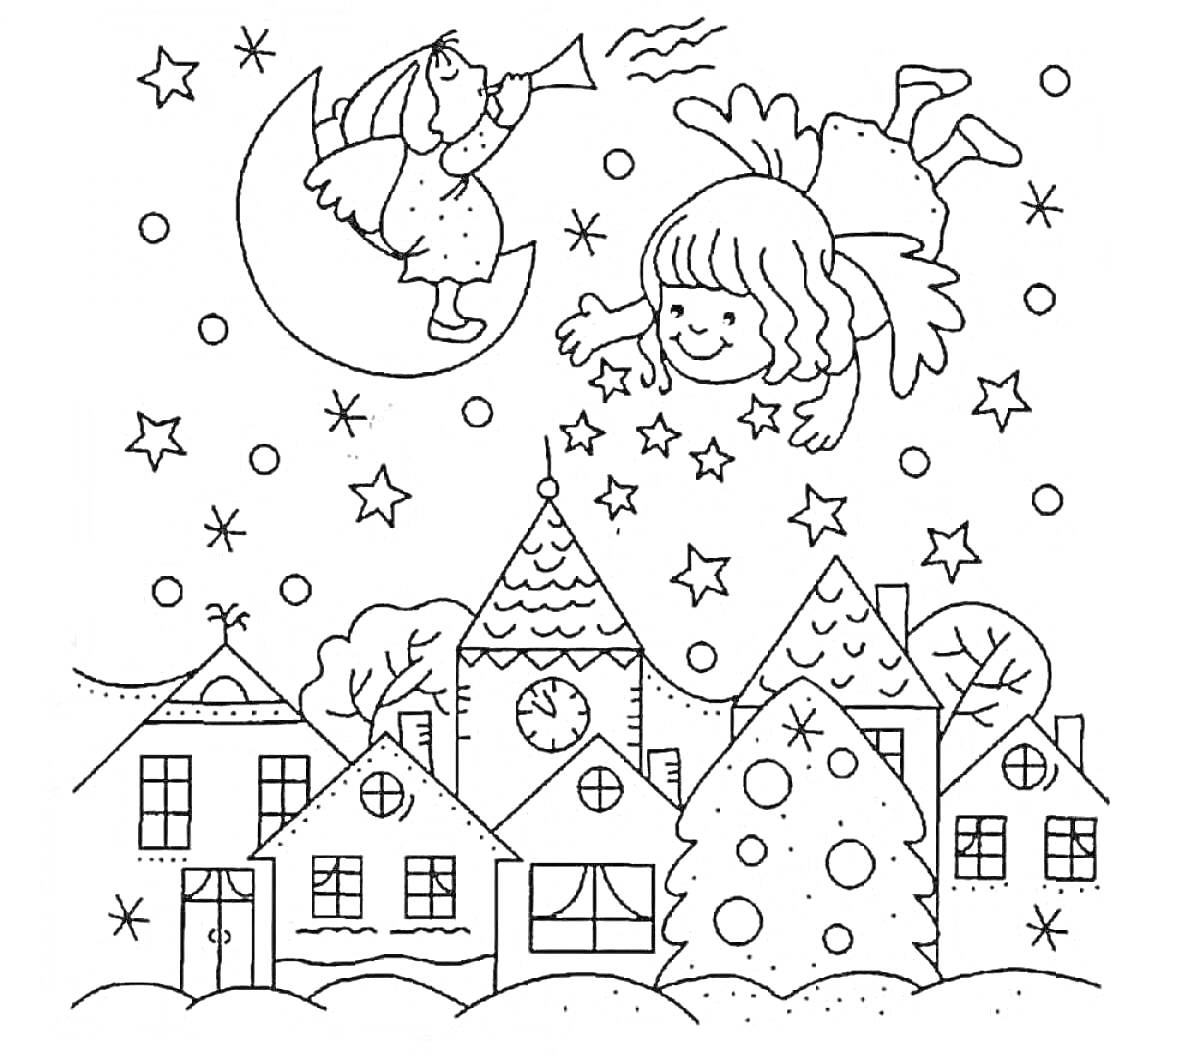 Раскраска Ангелы и дети на луне над рождественской деревней с елкой и звездами